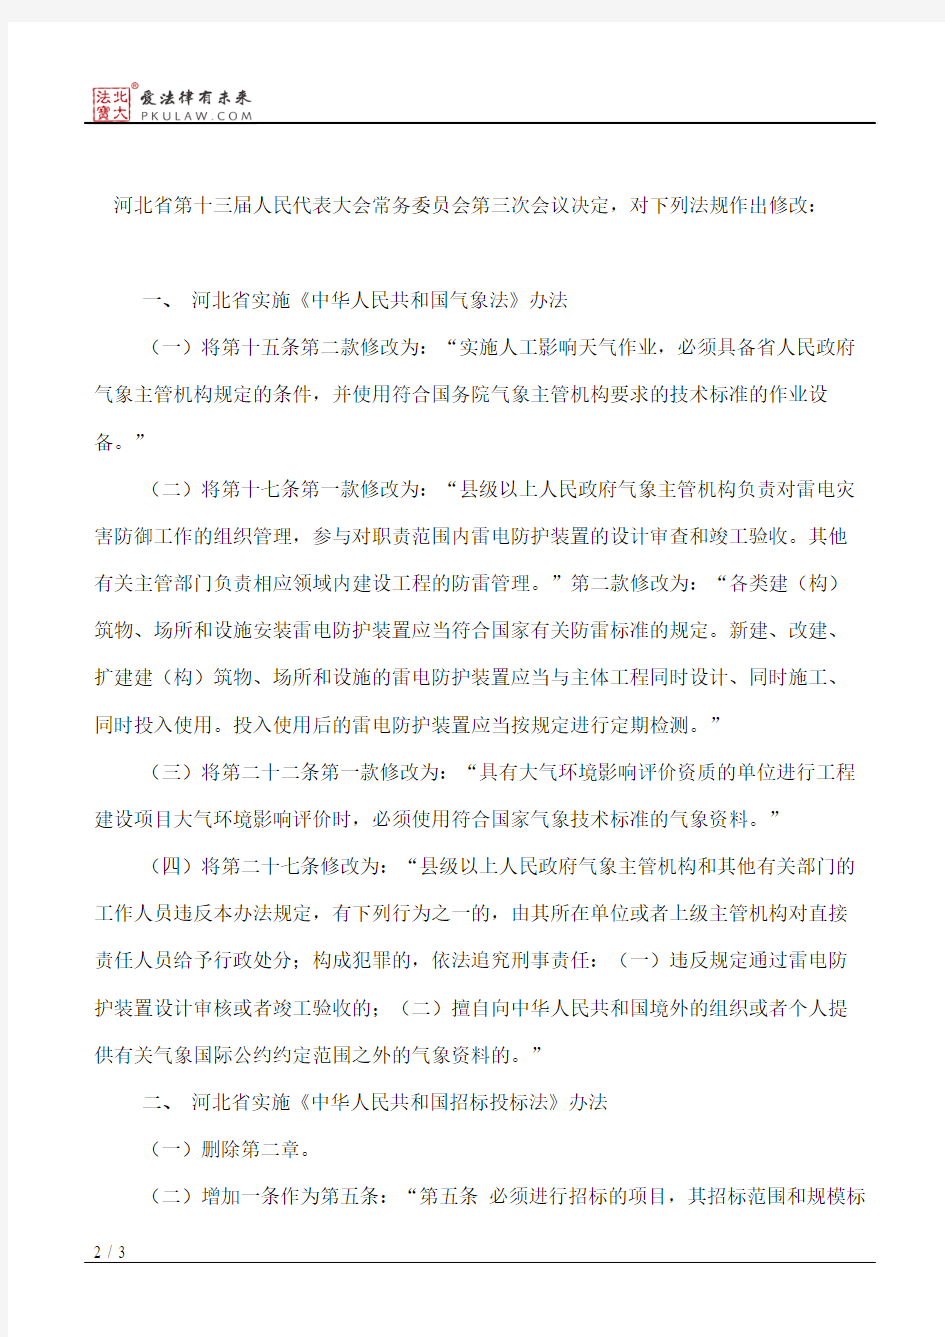 河北省人大常委会关于修改部分法规的决定(2018)